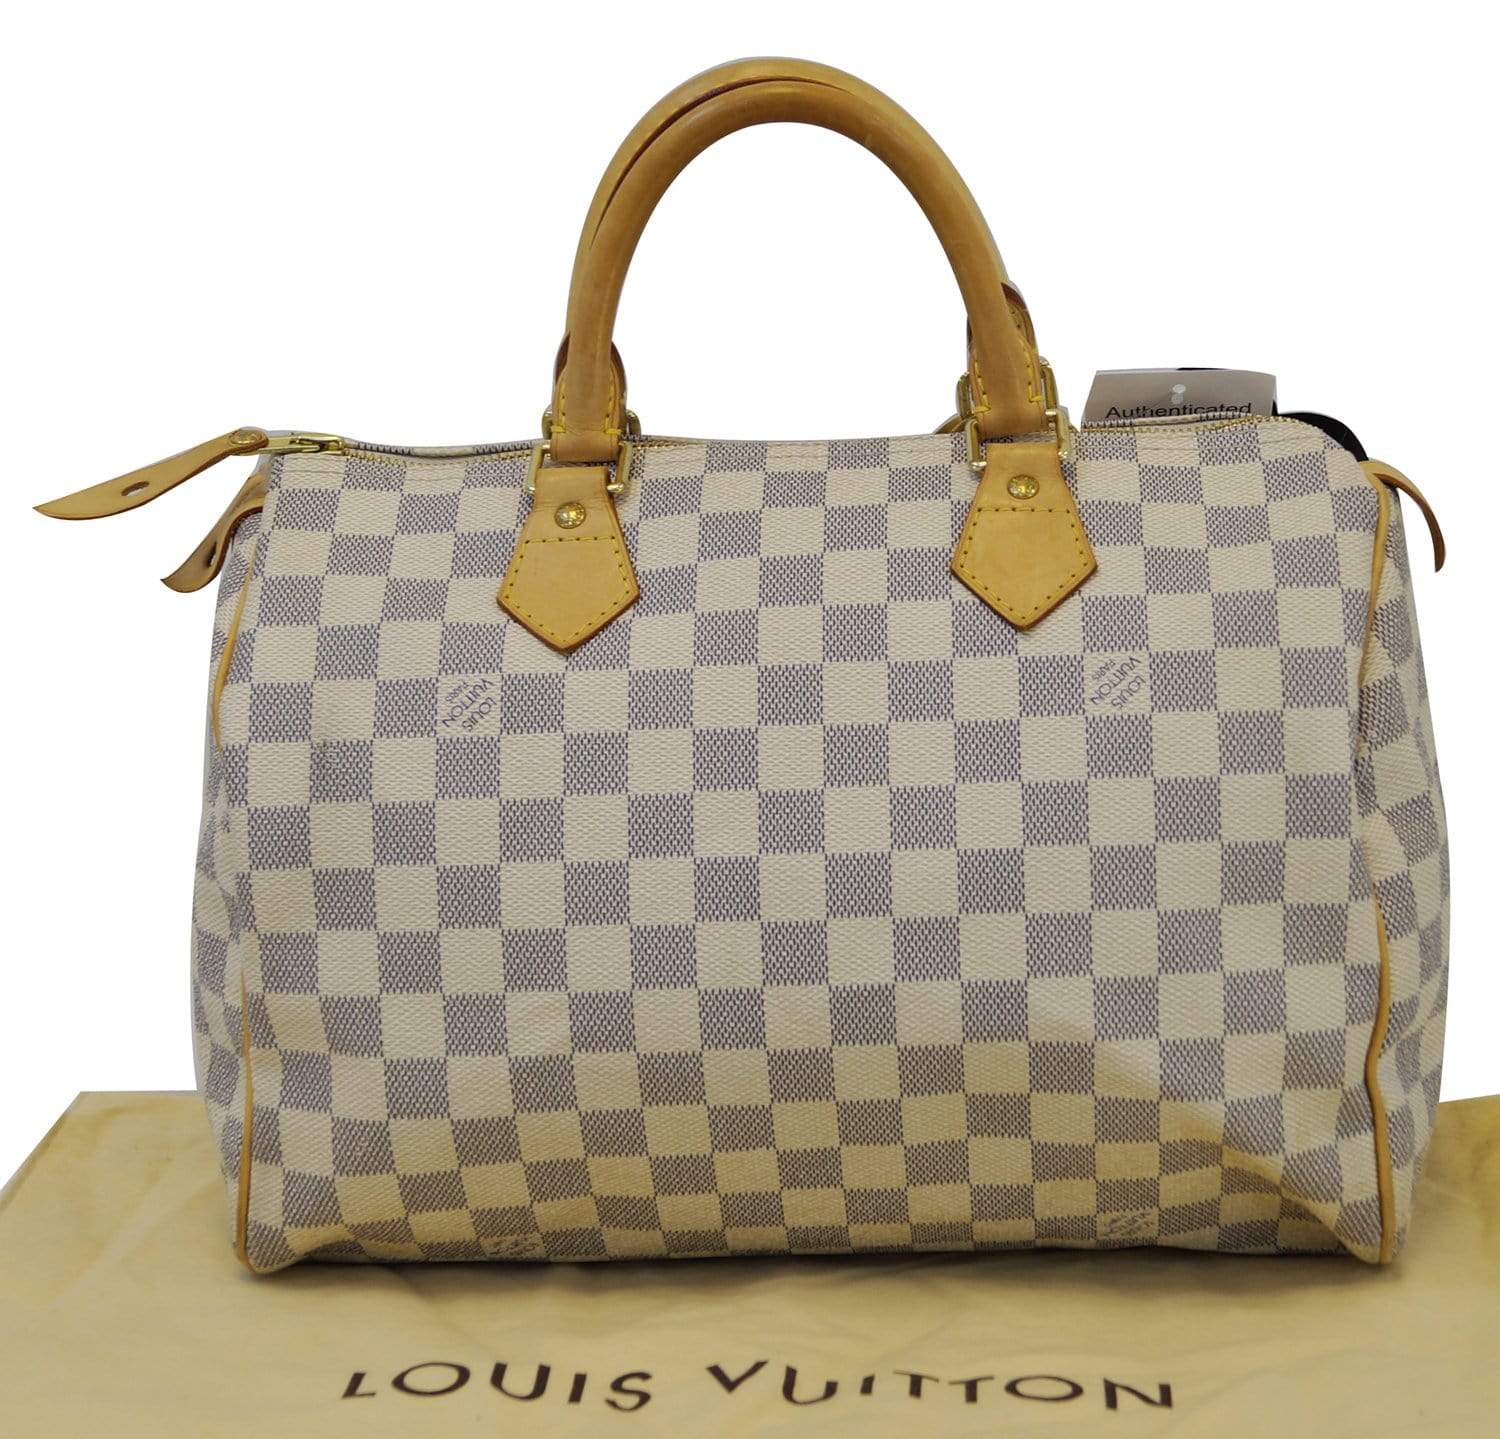 Louis Vuitton Damier Azur Speedy 30 - A World Of Goods For You, LLC